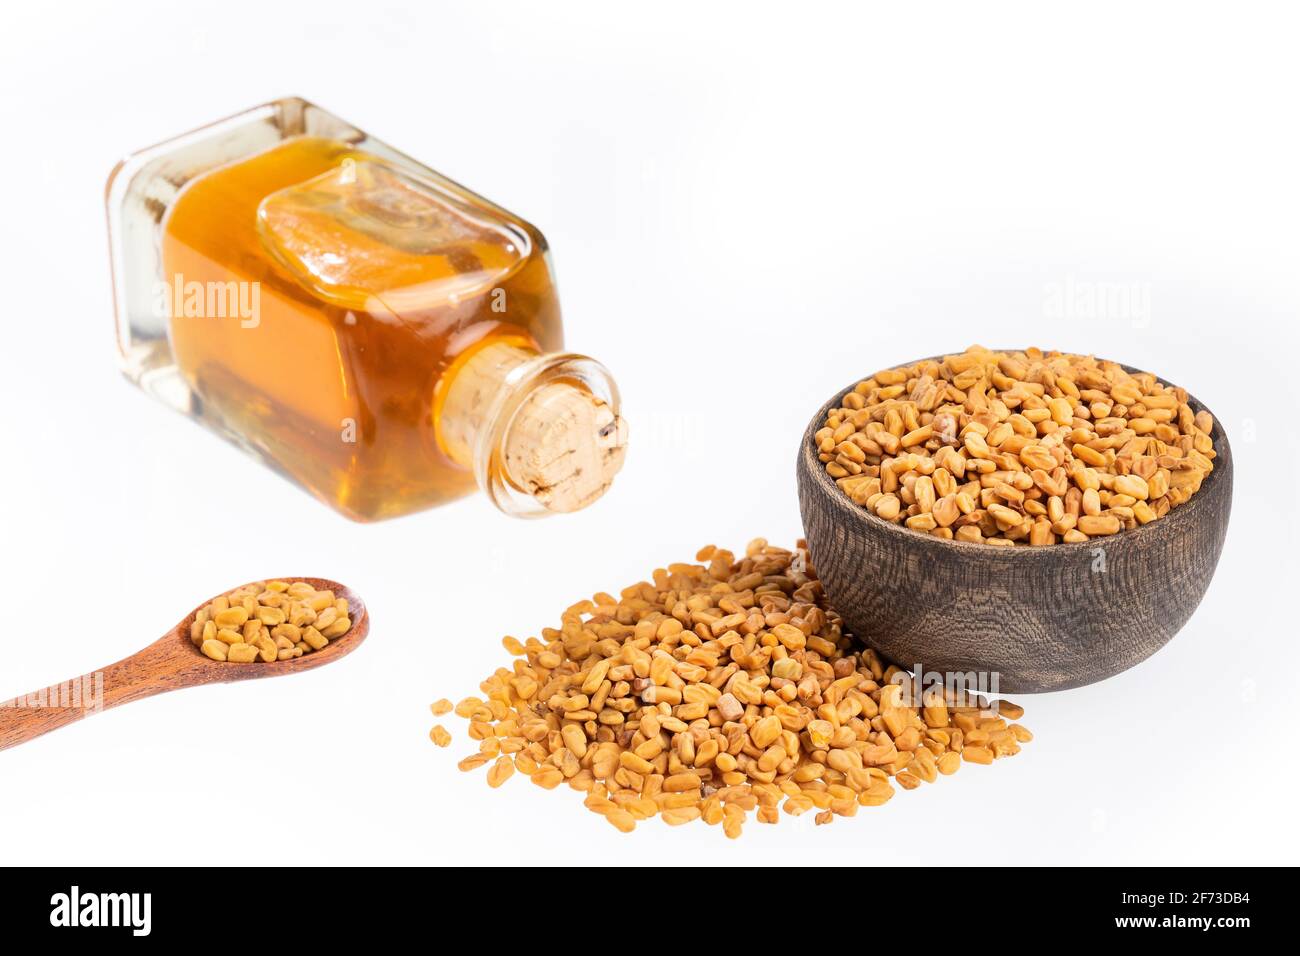 Fenugreek seeds and oil - Trigonella foenum - graecum Stock Photo